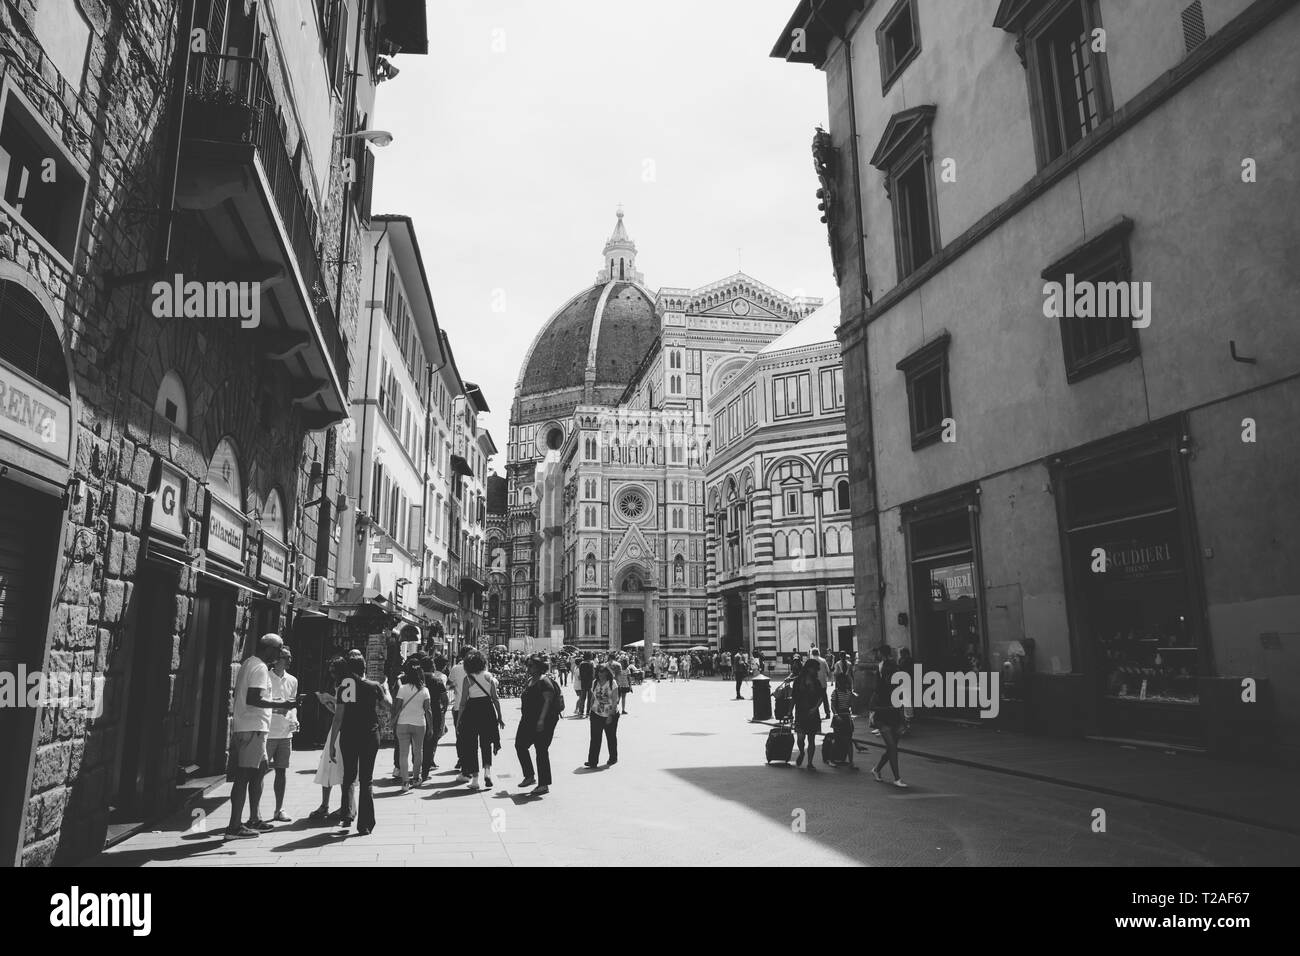 Florence, Italie - 24 juin 2018 : vue panoramique sur la Piazza del Duomo et Cattedrale di Santa Maria del Fiore (Cathédrale de Sainte Marie de la fleur). P Banque D'Images